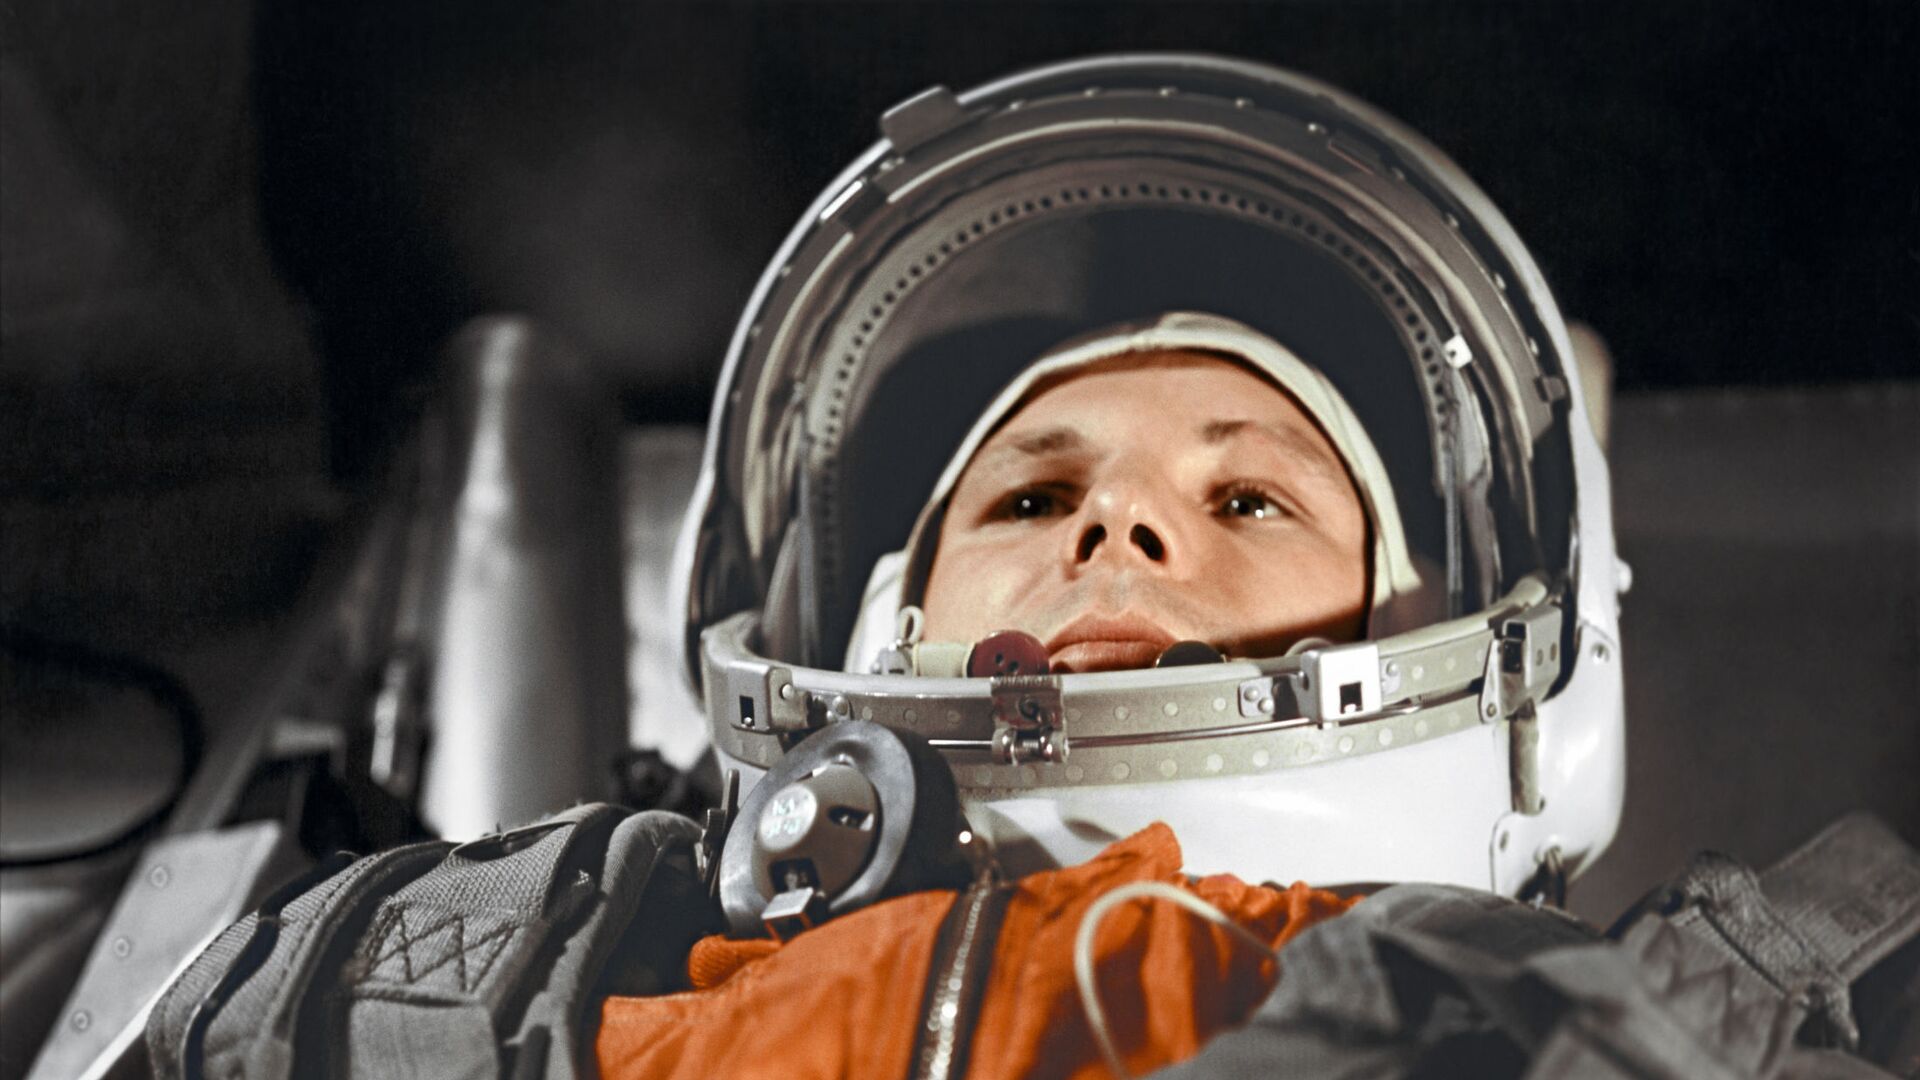 Космонавт Юрий Гагарин в кабине космического корабля Восток-1 перед стартом. Космодром Байконур, 12 апреля 1961 года. - Sputnik Латвия, 1920, 31.05.2021